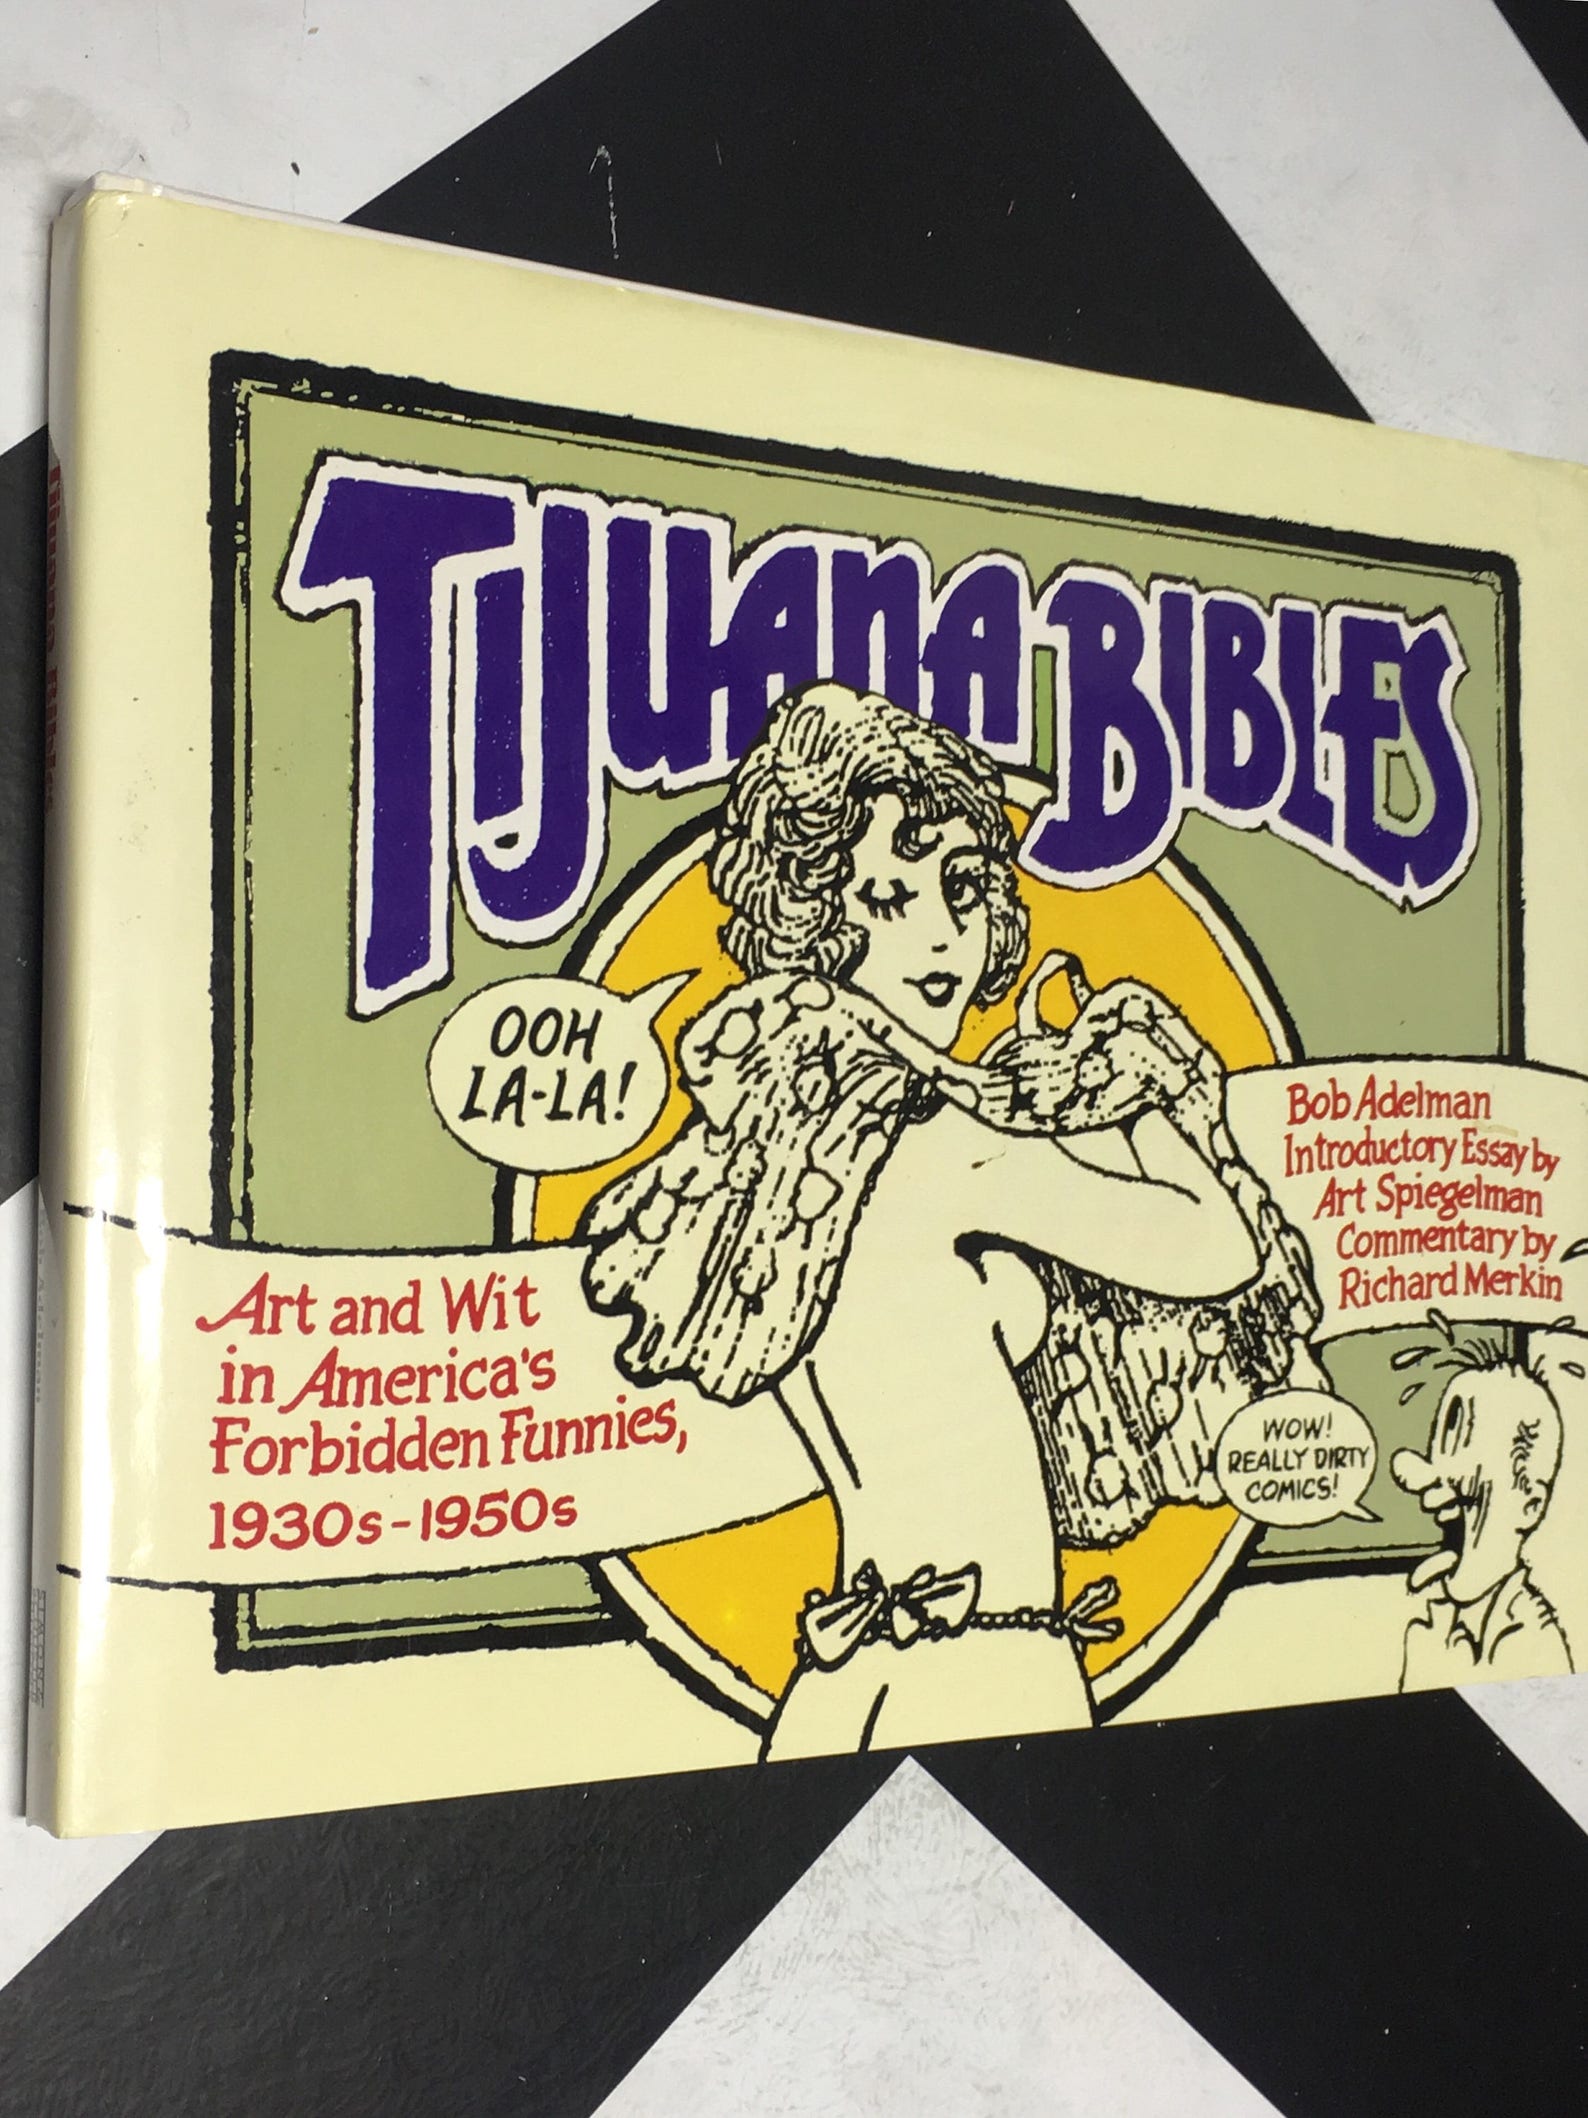 Tijuana bibles art and wit in america's forbidden funnies 1930s-1950s